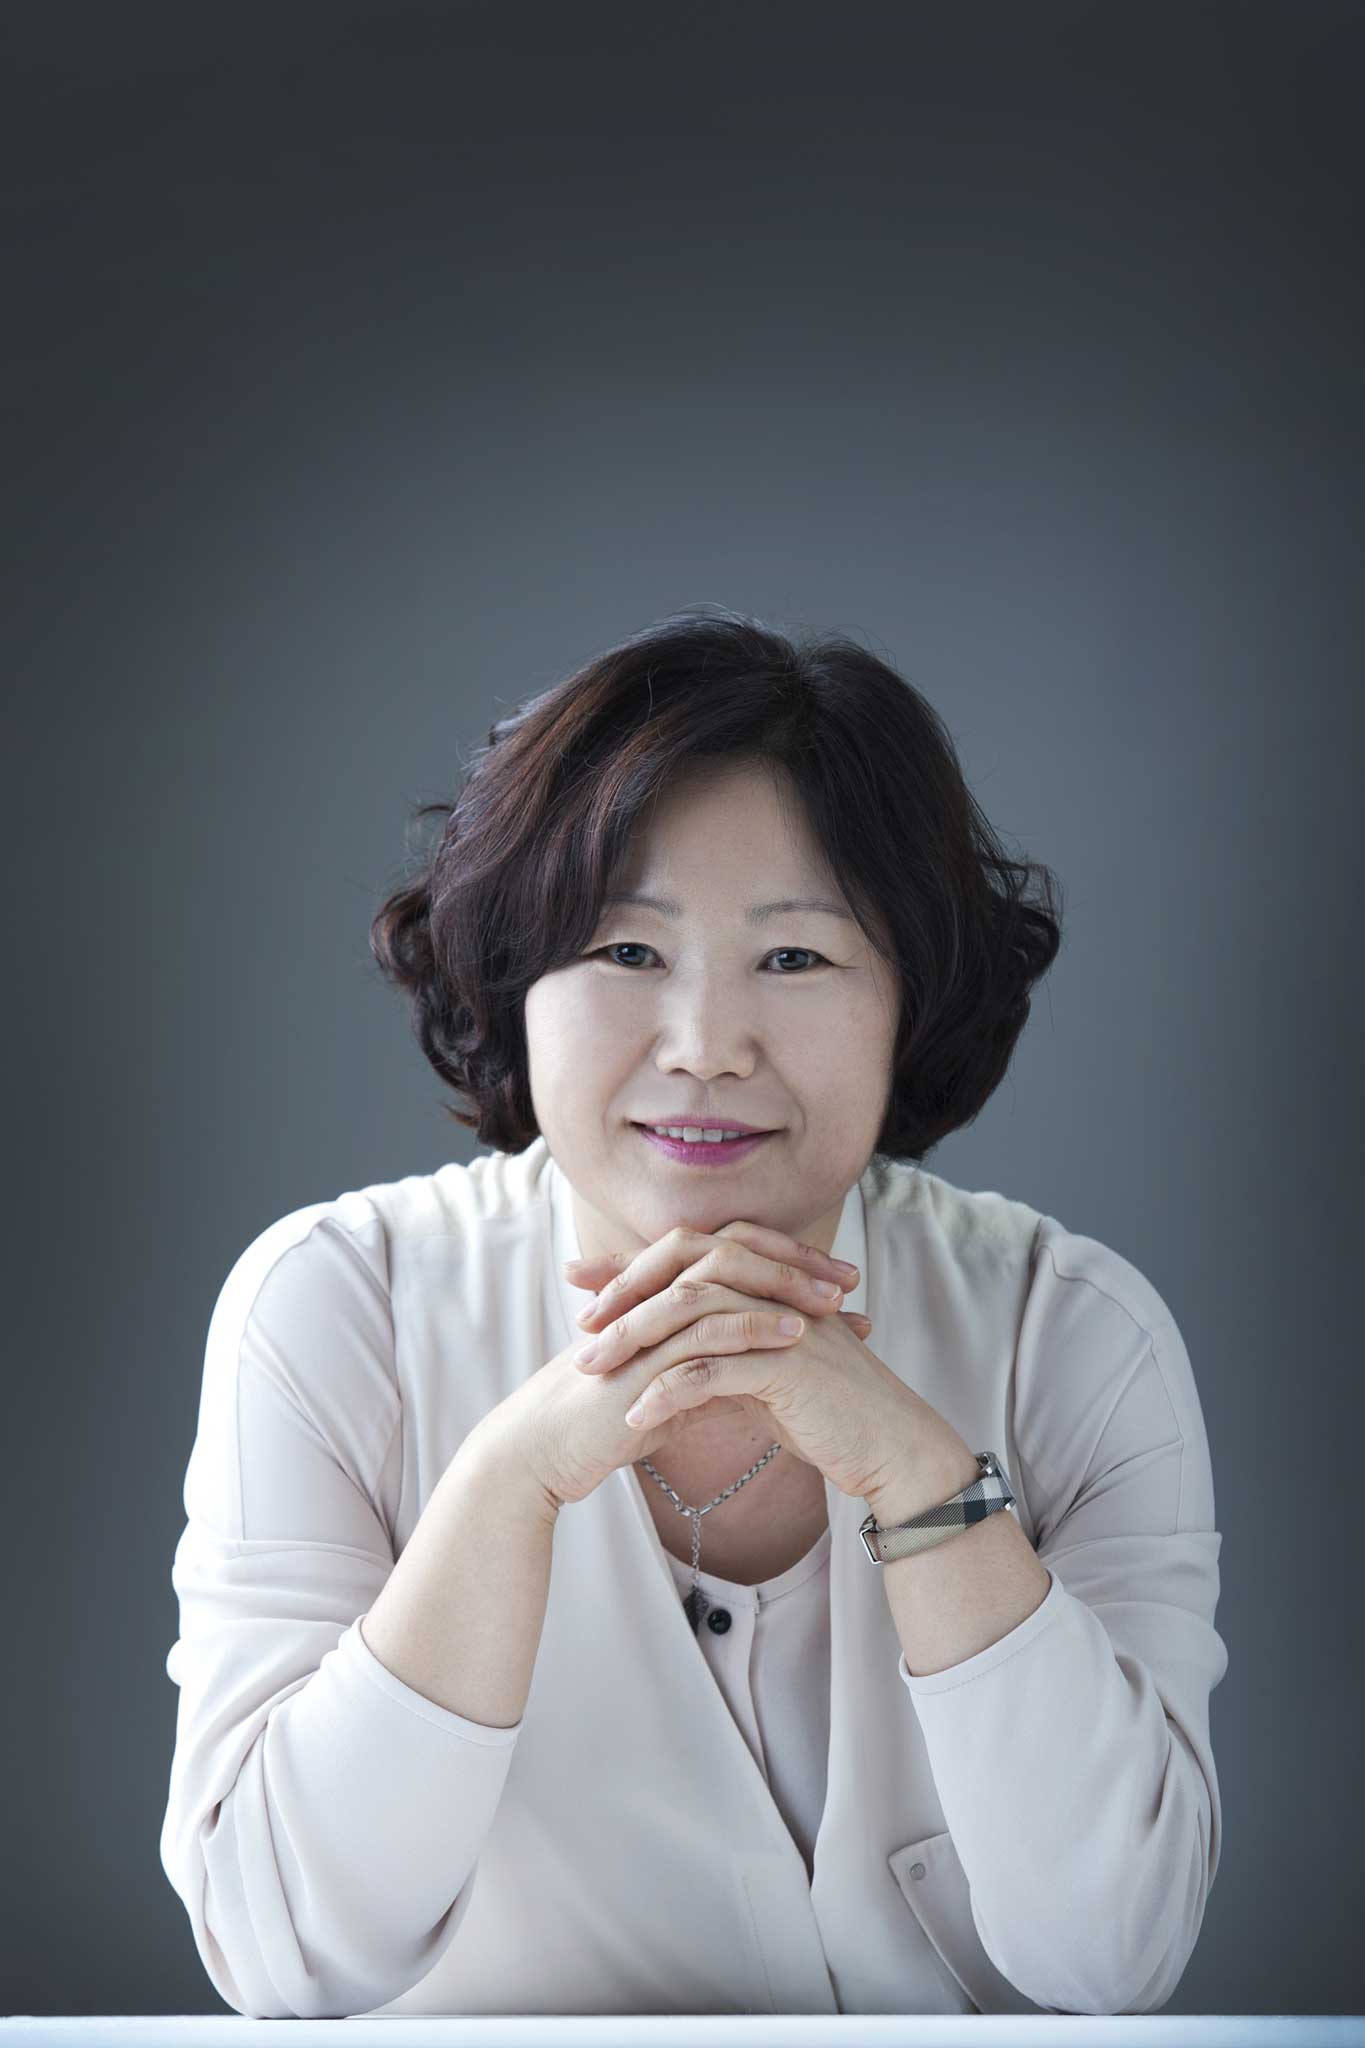 Maternal love: Author Sun-mi Hwang